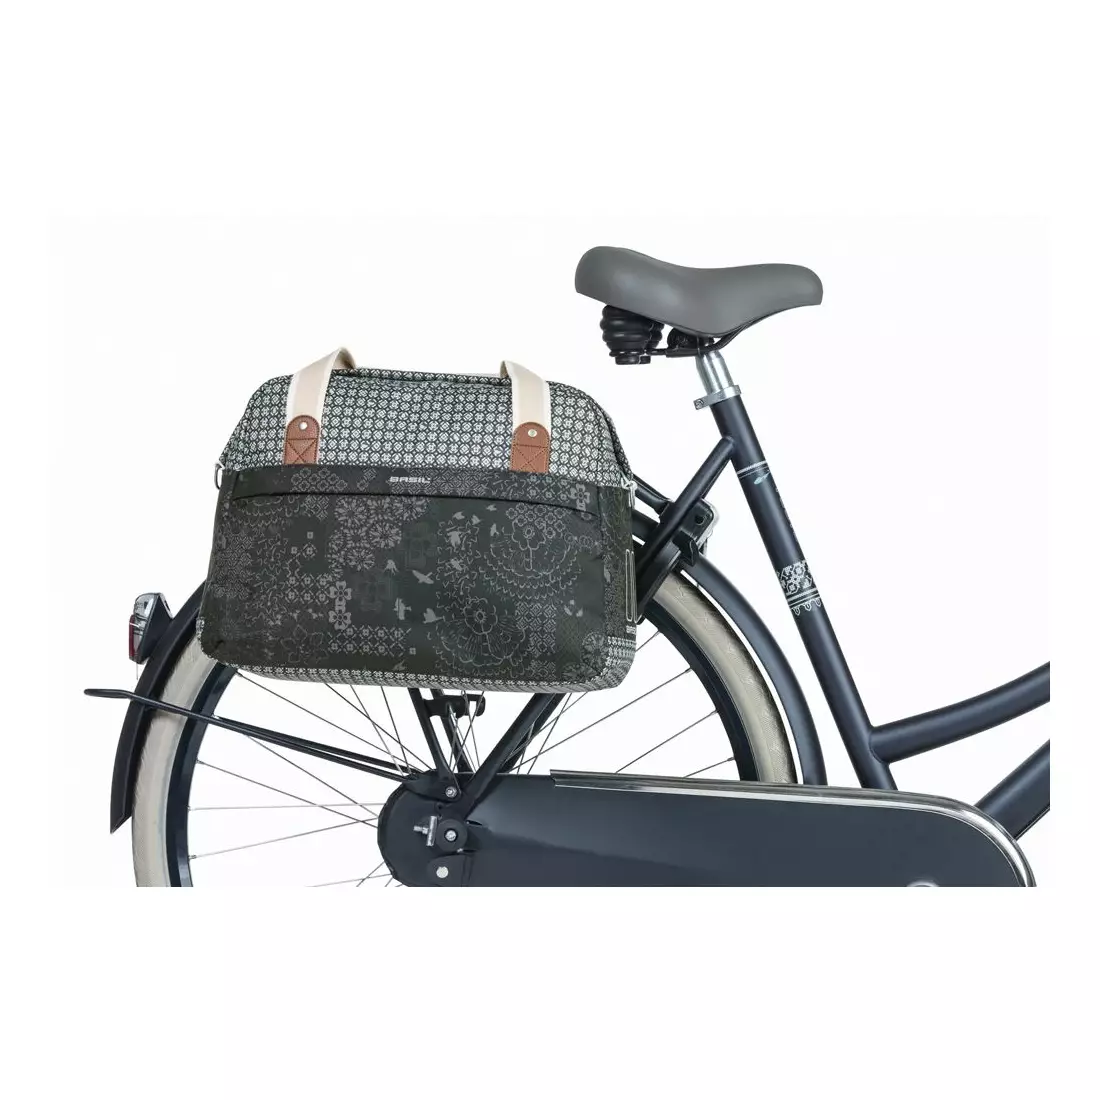 BASIL jediný zadní nosič jízdních kol boheme carry all bag 18L charcoal BAS-18009